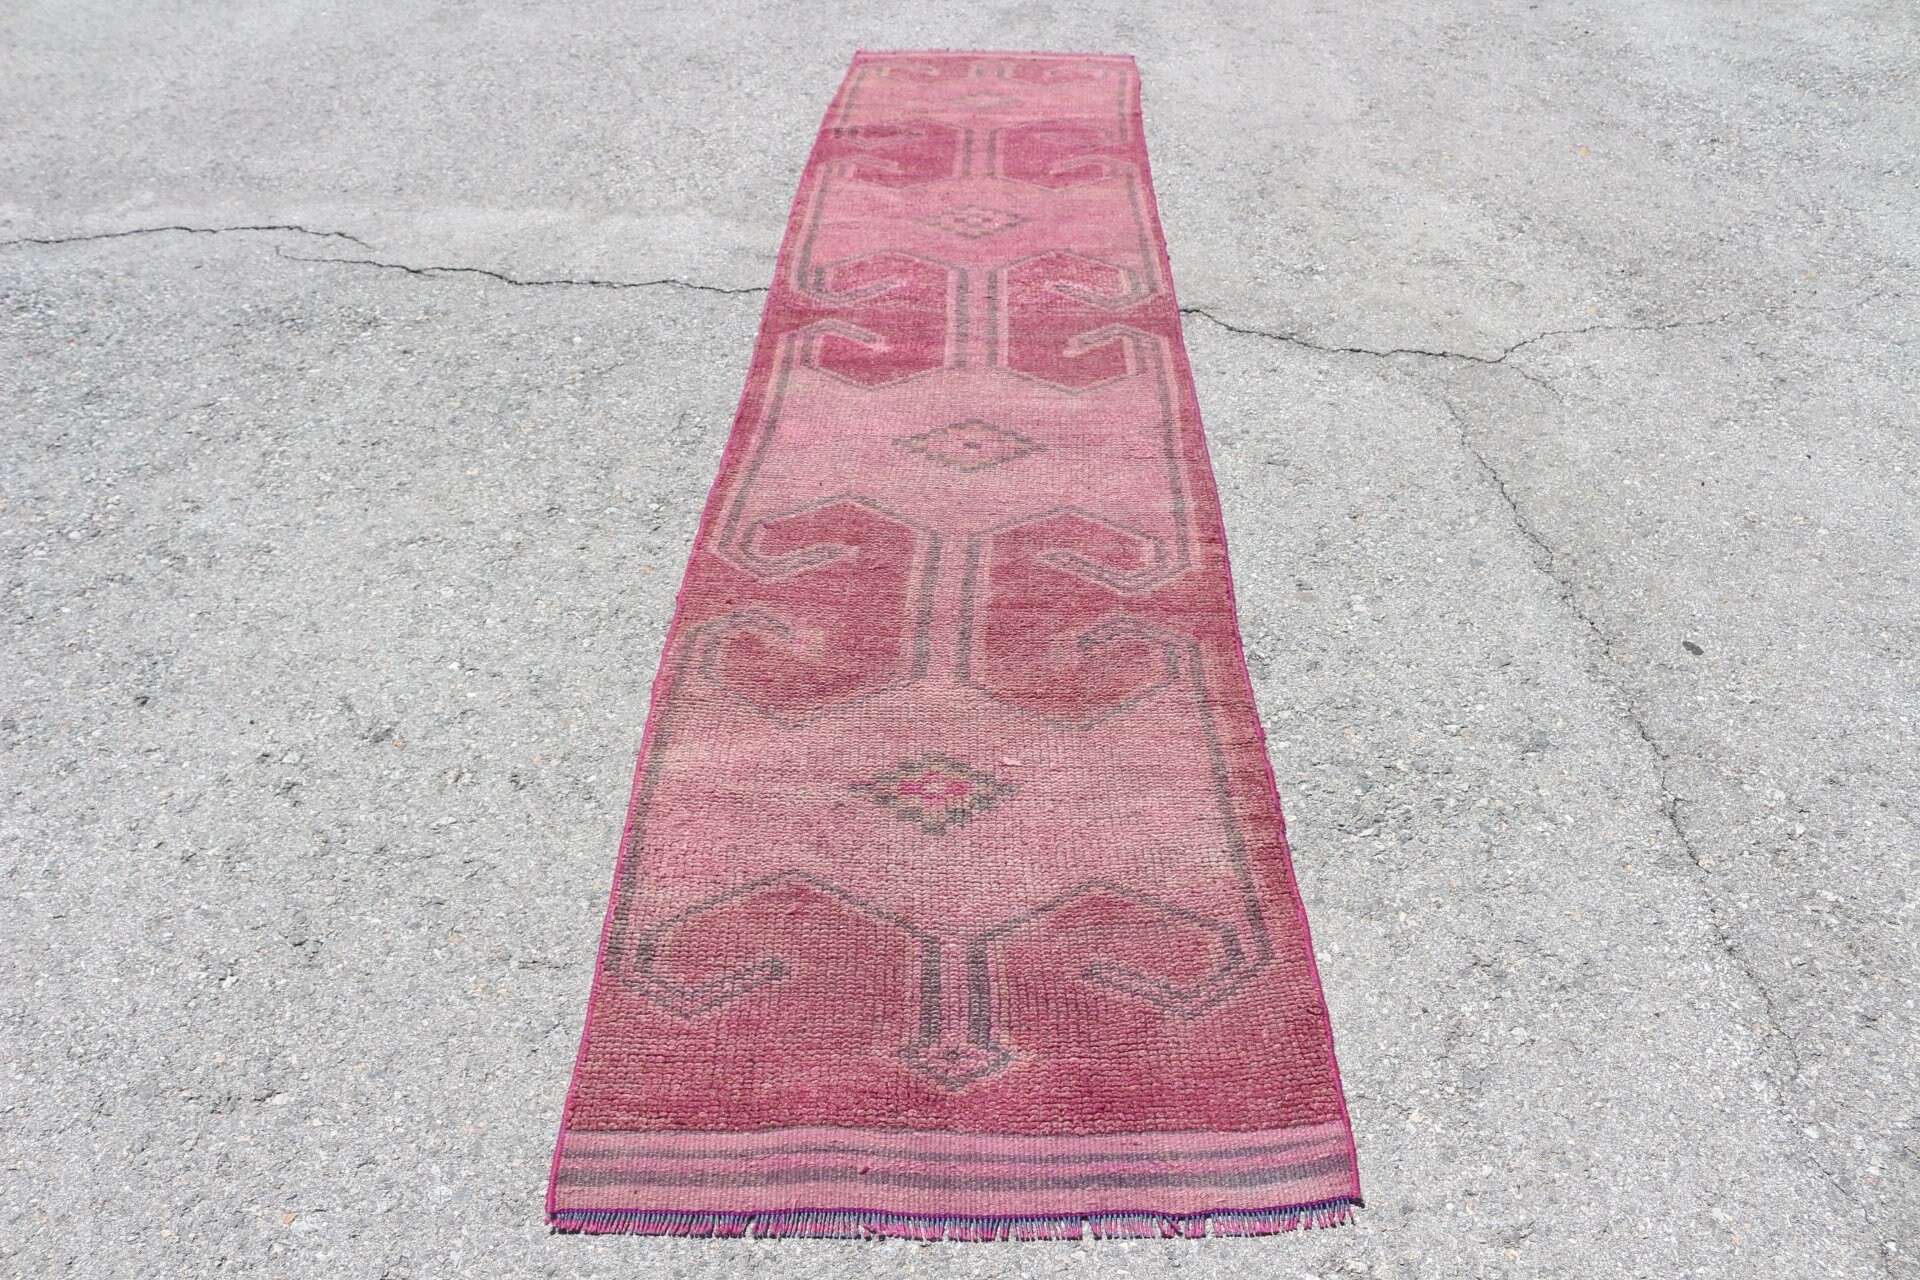 Moroccan Rugs, Floor Rug, 2.6x11.4 ft Runner Rug, Vintage Rugs, Tribal Rugs, Corridor Rug, Rugs for Runner, Pink Cool Rugs, Turkish Rugs